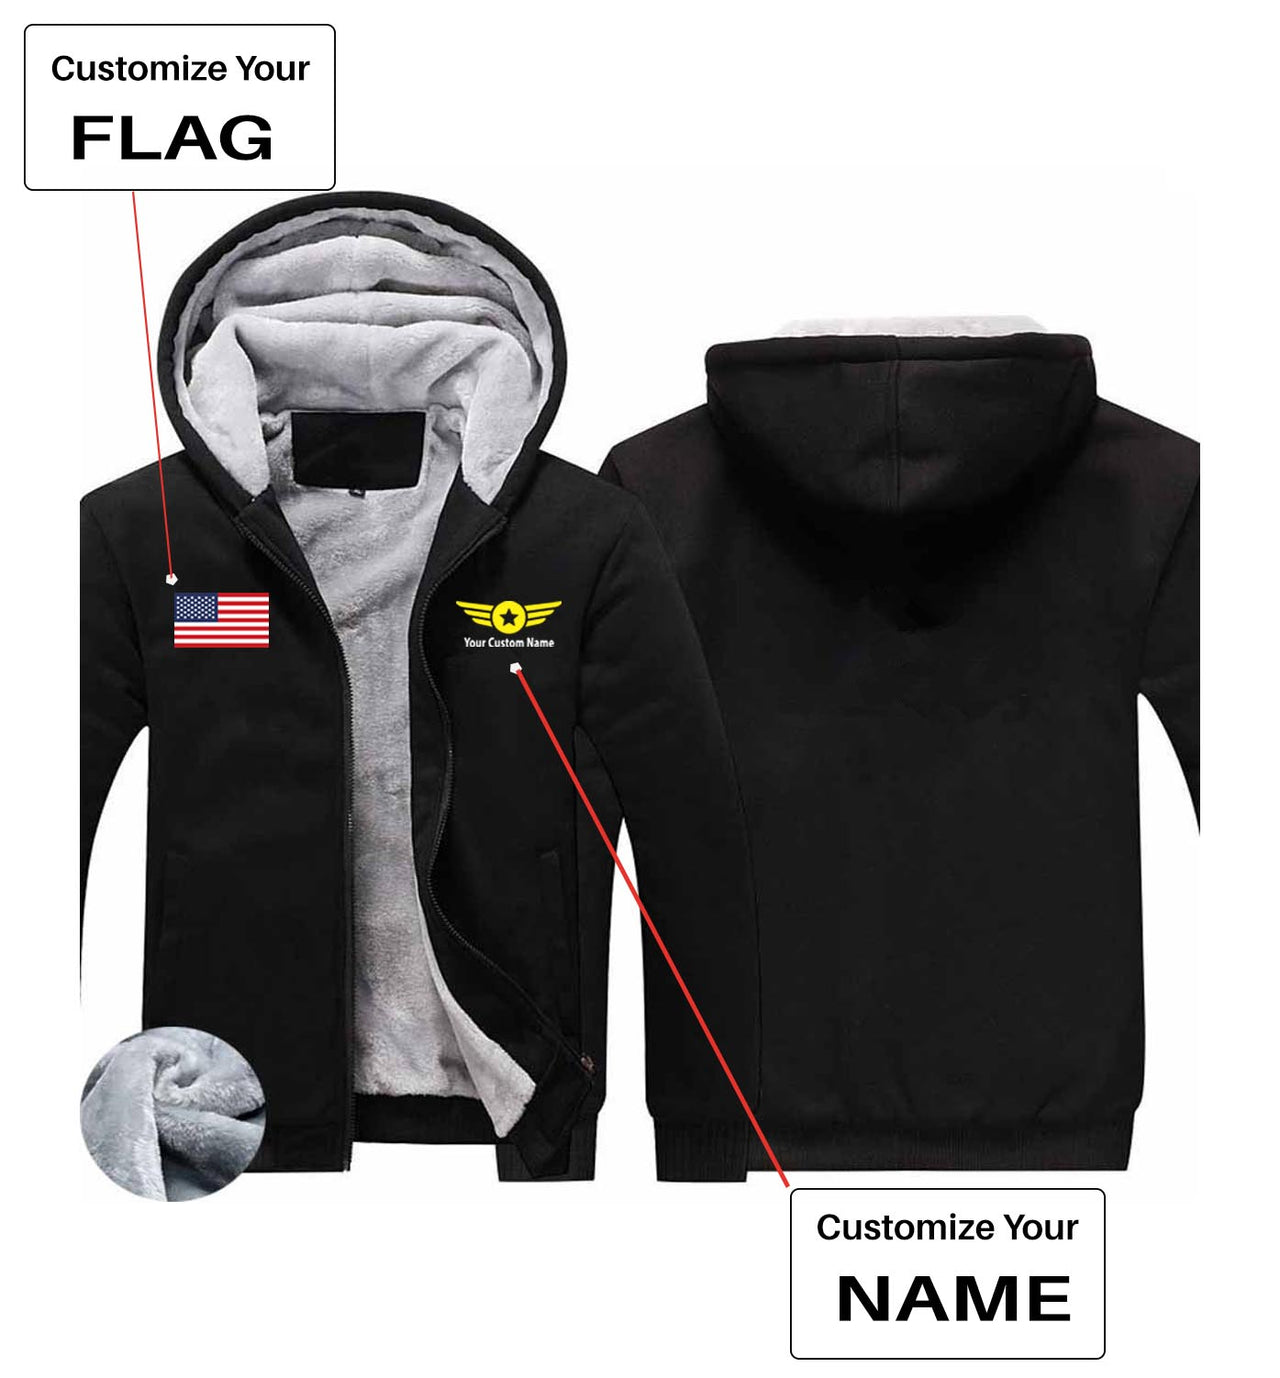 Your Custom Name & Flag (Badge 4) Designed Zipped Sweatshirts